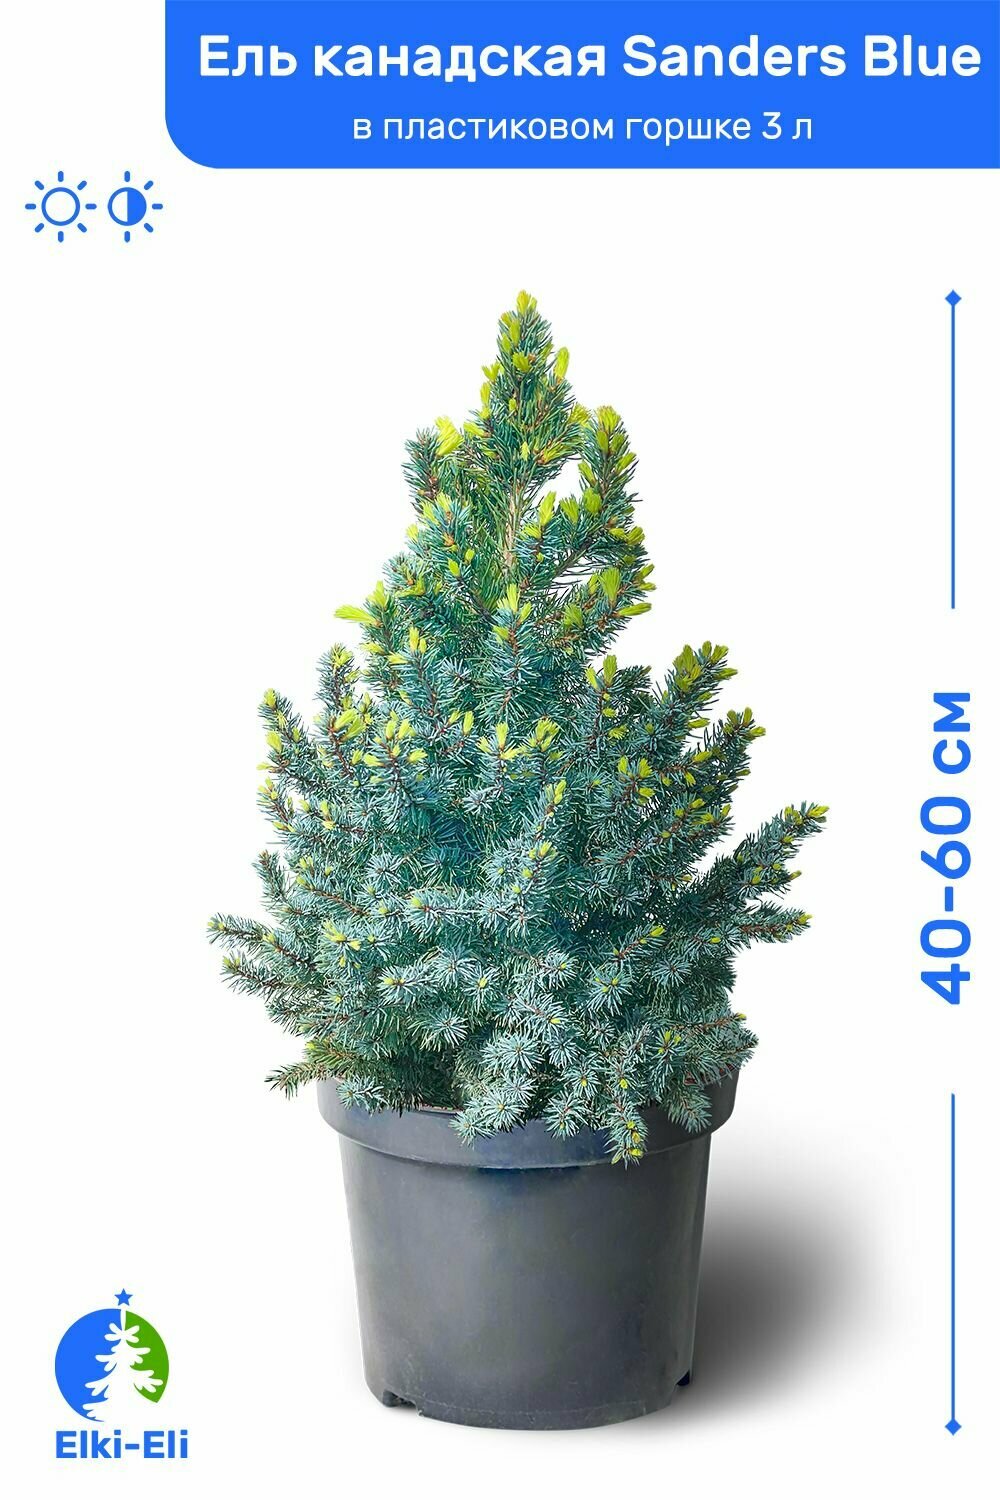 Ель канадская Sanders Blue (Сандерс Блю) 40-60 см в пластиковом горшке 3 л, саженец, хвойное живое растение